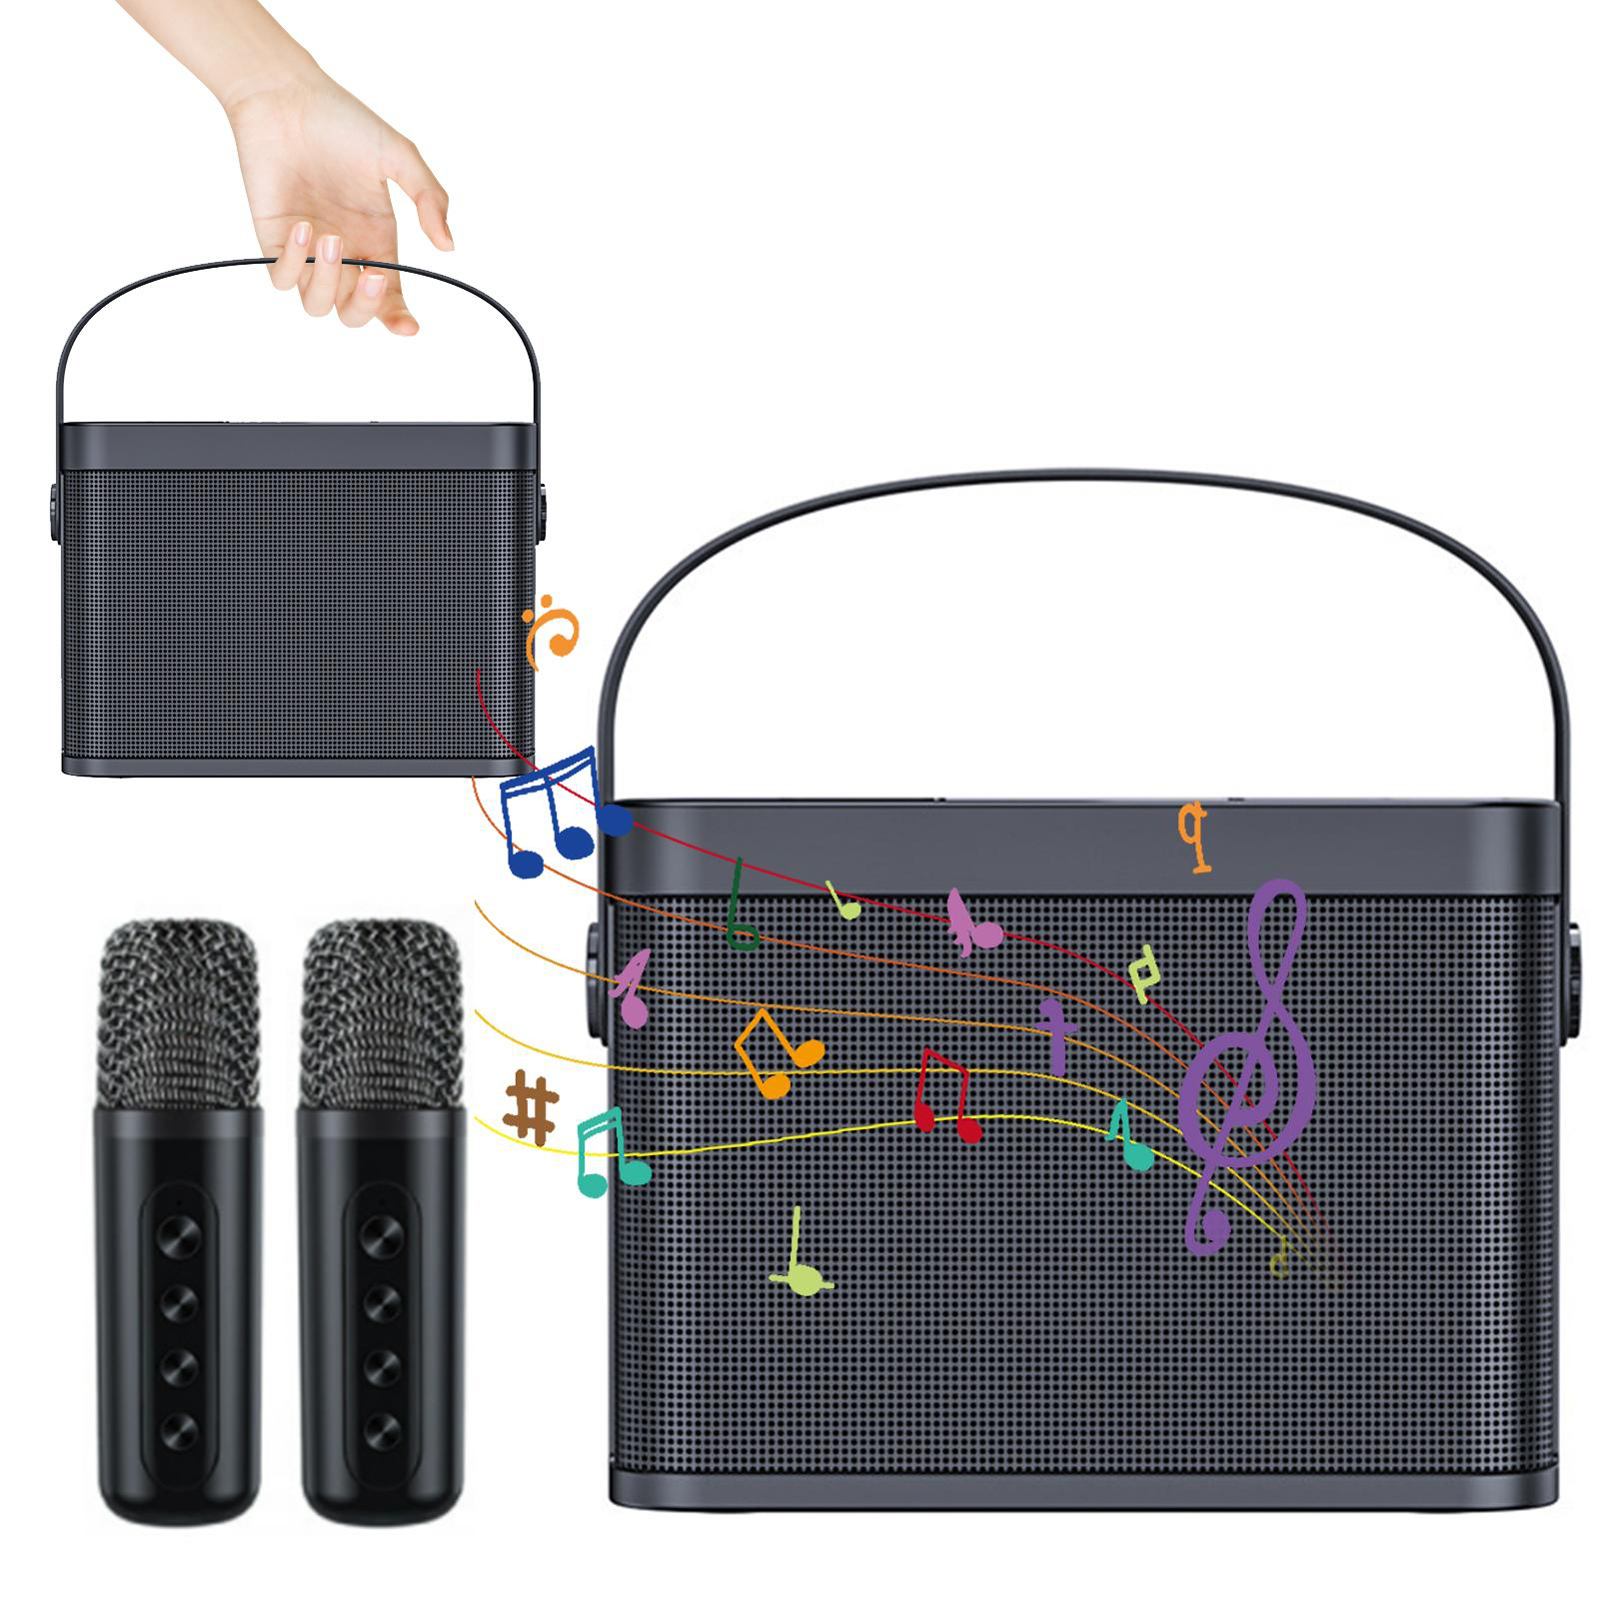 ホーム ミニ カラオケ スピーカー キット ワイヤレス Bluetooth 対応 デュアル マイク スピーカー 小型 オーディオ KTV セット